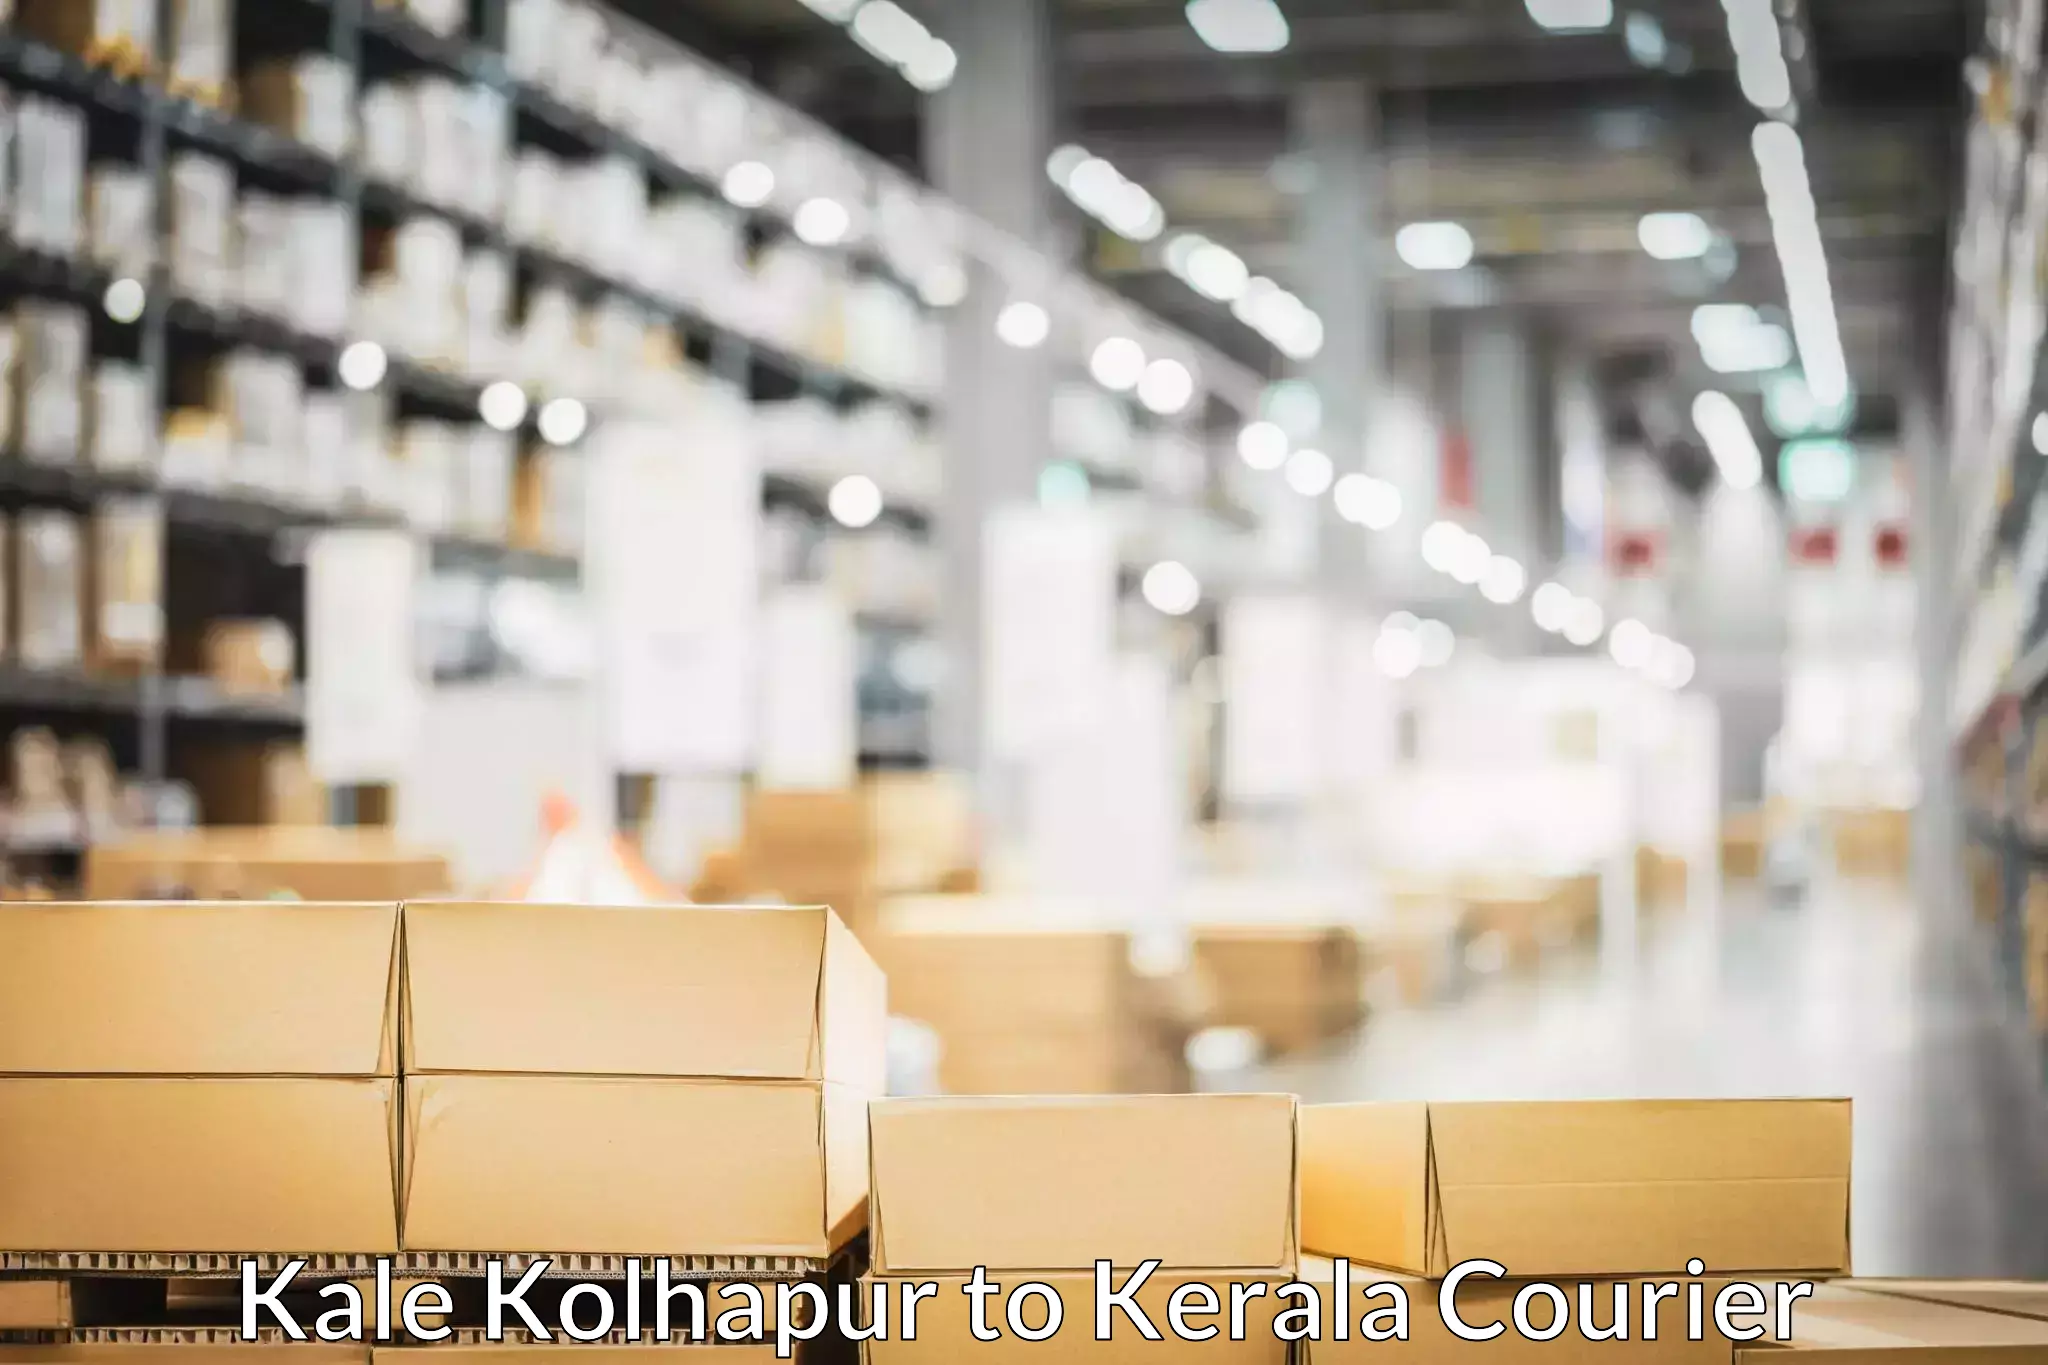 Furniture moving experts Kale Kolhapur to Kerala